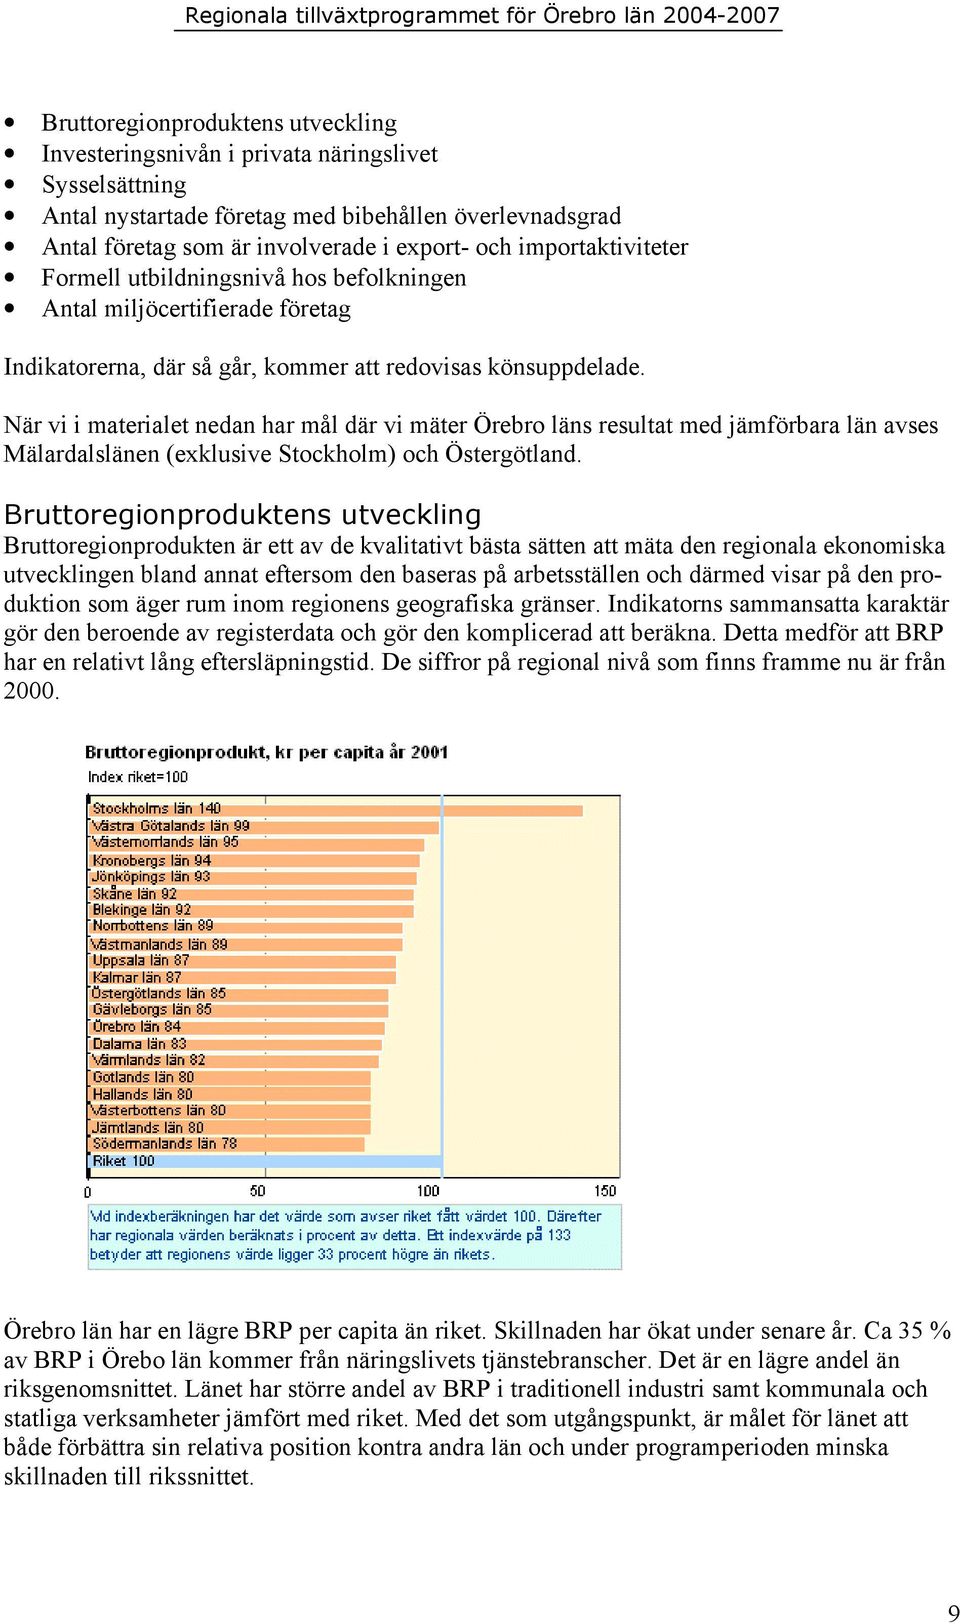 När vi i materialet nedan har mål där vi mäter Örebro läns resultat med jämförbara län avses Mälardalslänen (exklusive Stockholm) och Östergötland.